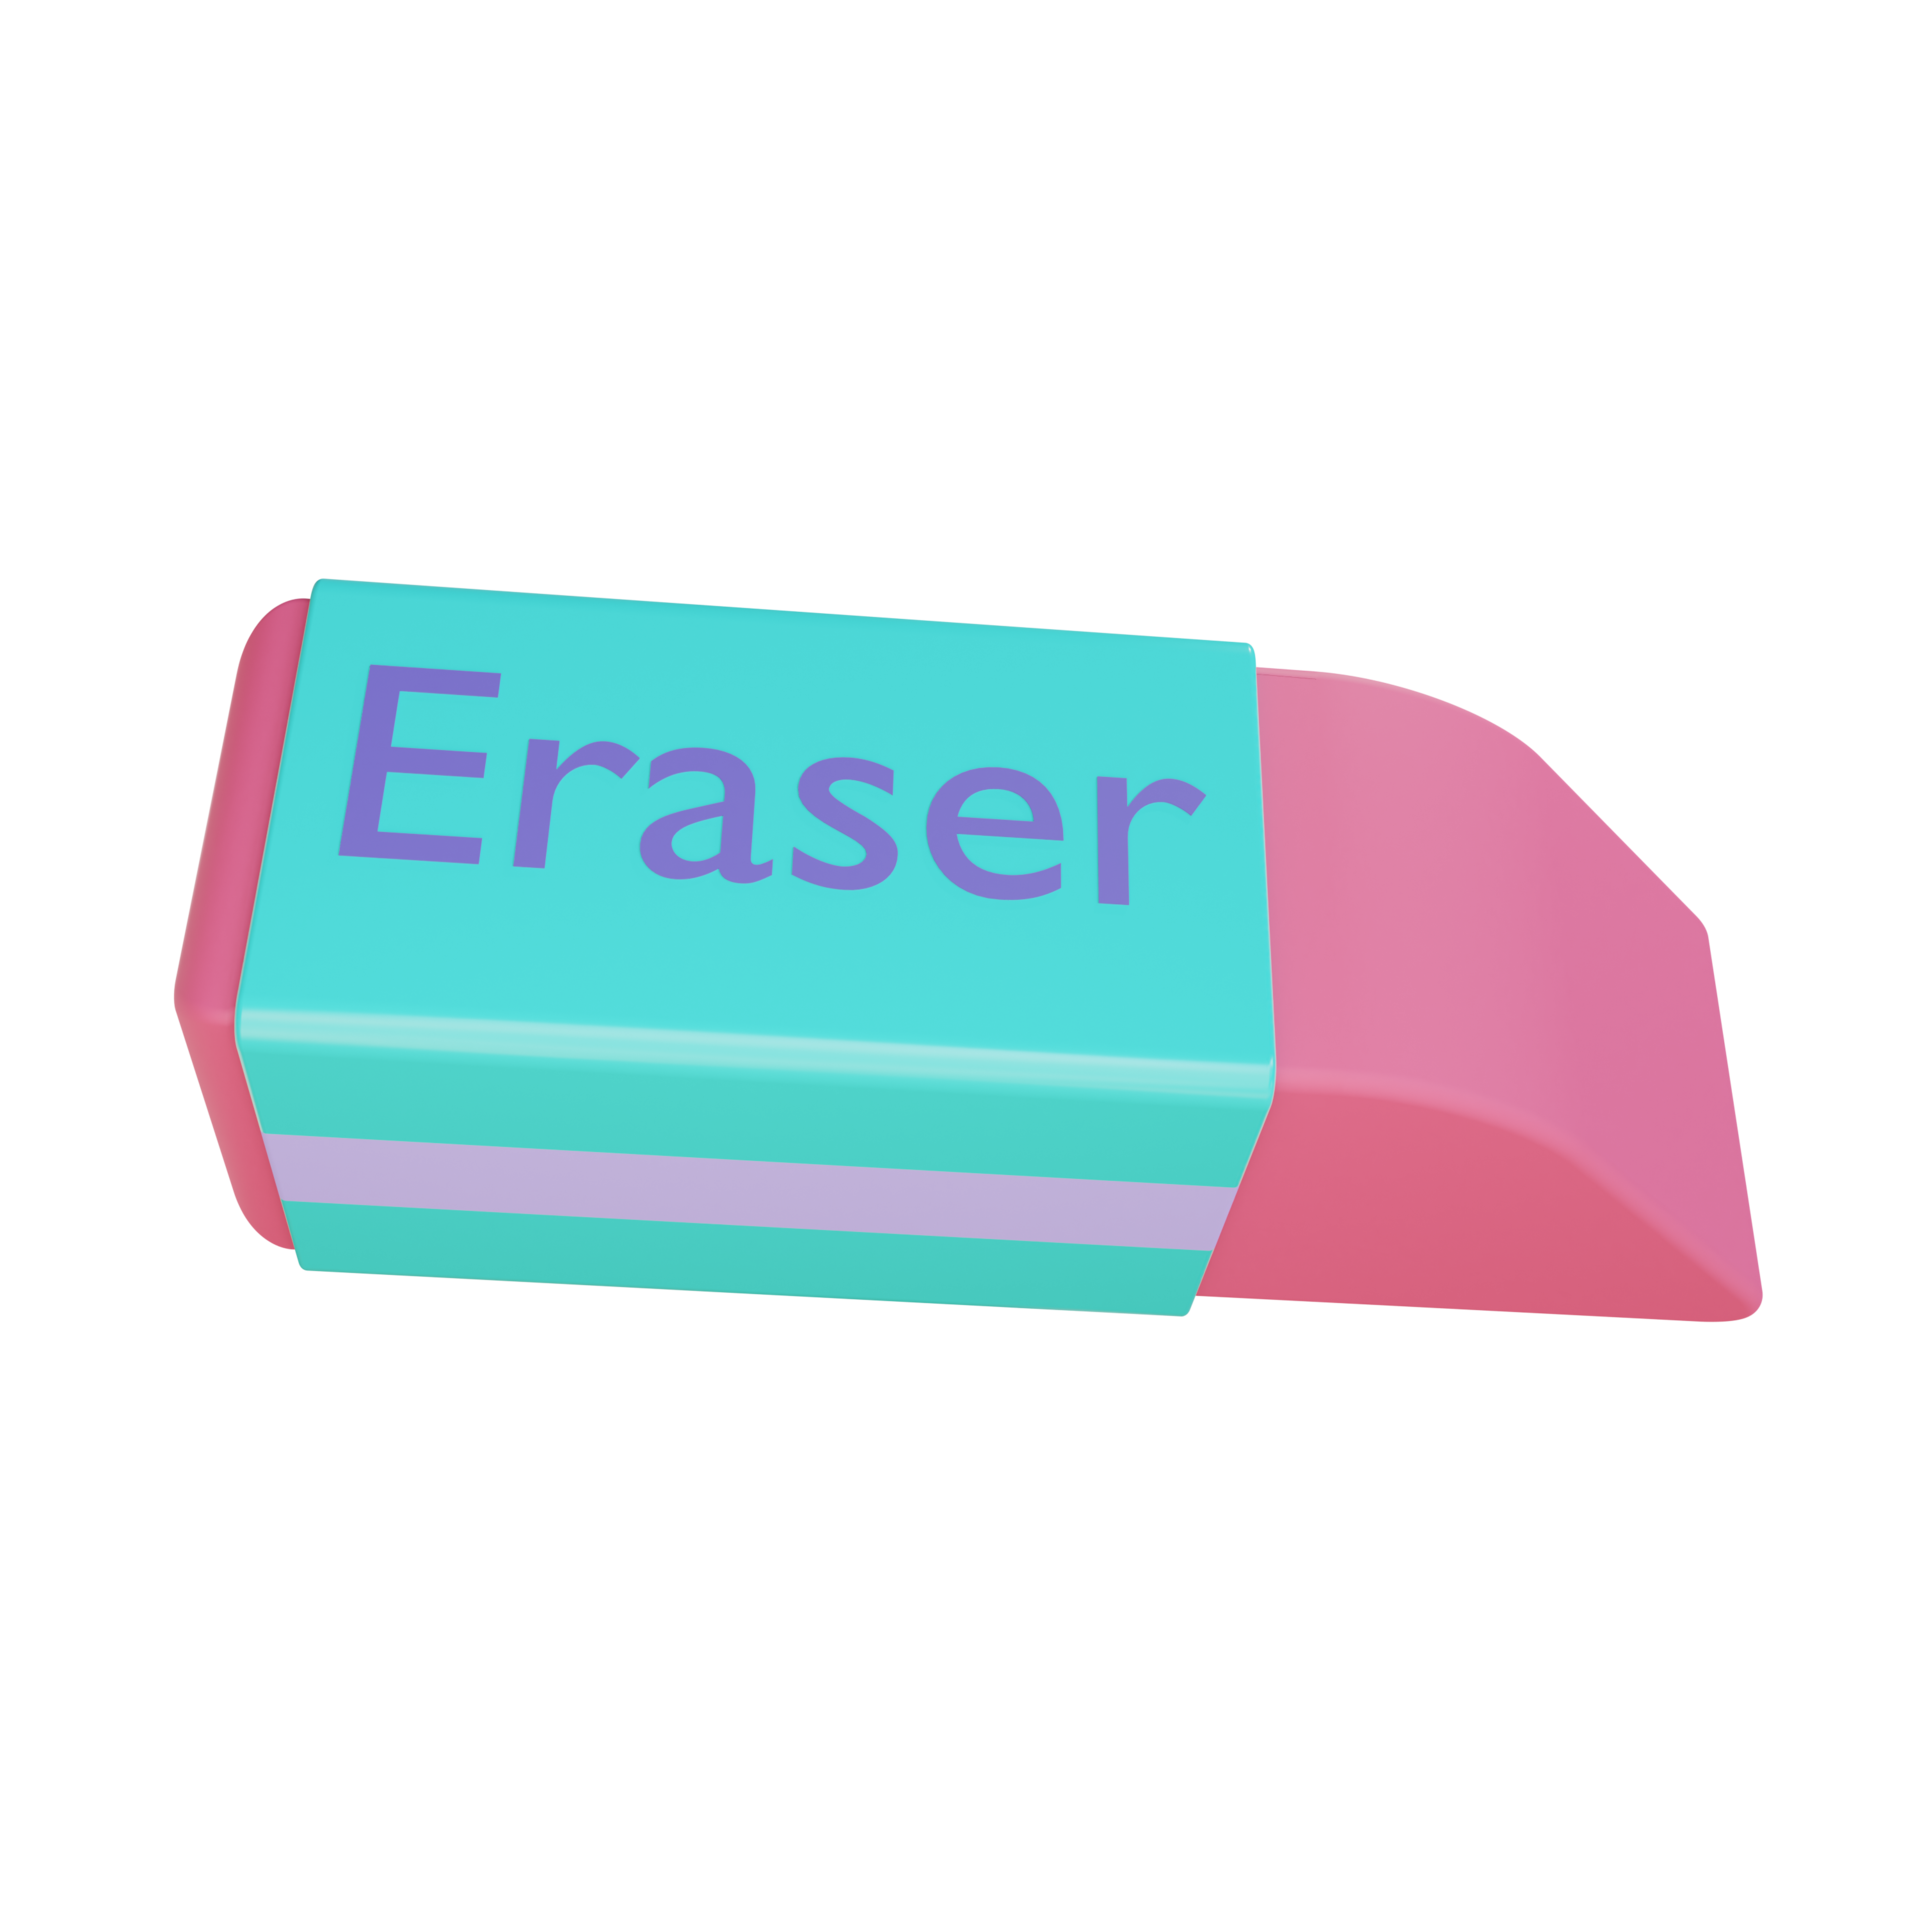 3D eraser là một sản phẩm thú vị với khả năng tạo ra hiệu ứng 3D độc đáo trên những bức ảnh và vật thể. Nếu bạn là fan của sản phẩm sáng tạo hoặc đang muốn tìm kiếm cách thêm sắc thái cho bức ảnh, hãy xem những hình ảnh liên quan để khám phá sức mạnh của 3D eraser.